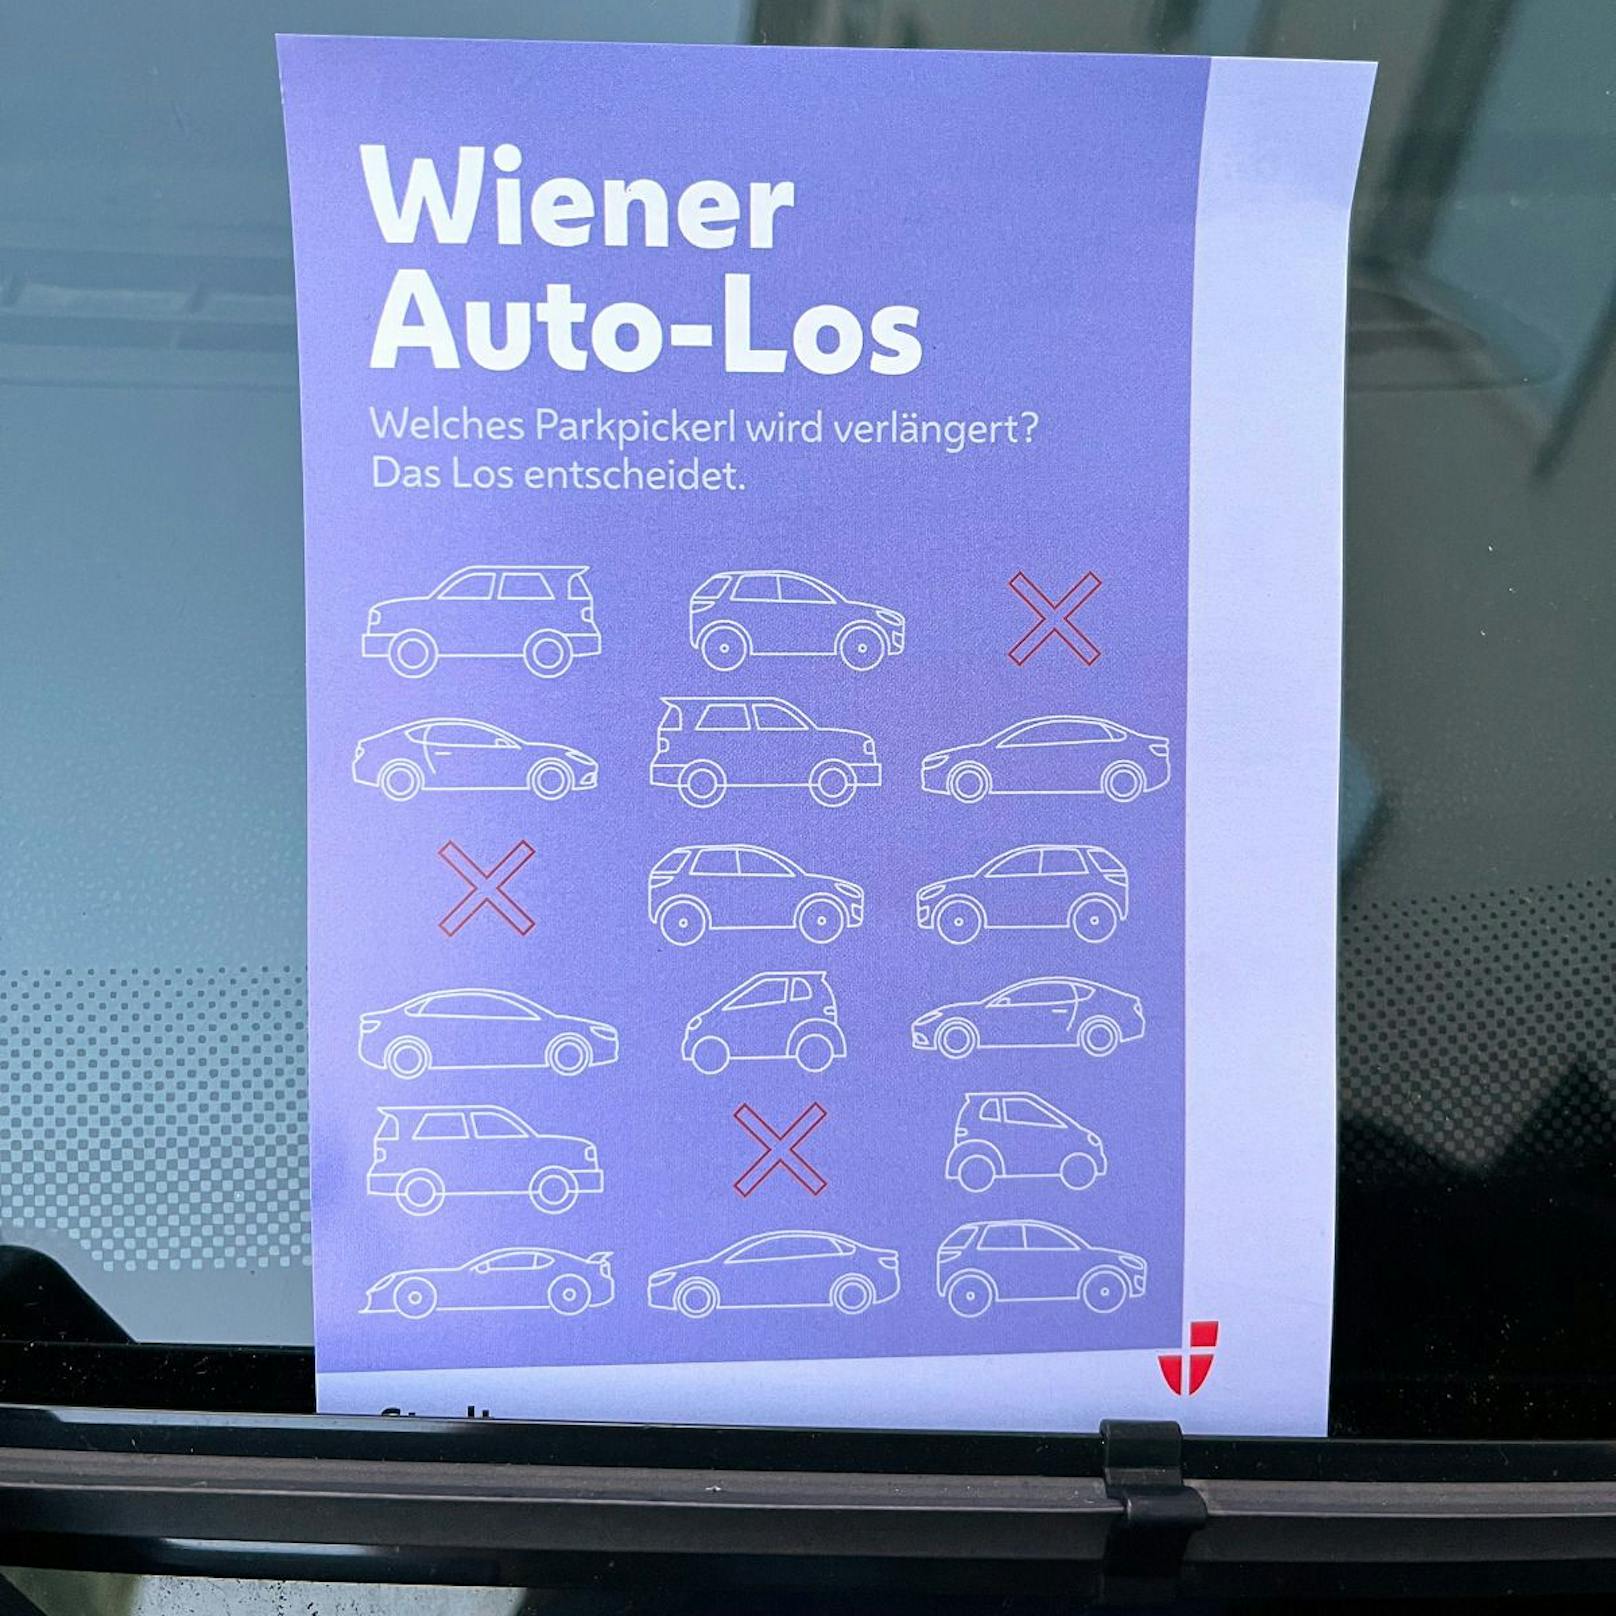 Das "Wiener Auto-Los" solle bis 2030 die Anzahl an Autos drastisch reduzieren, per Lotterie-Verfahren würden jene Bürger gezogen, die ihr Parkpickerl verlieren sollen.